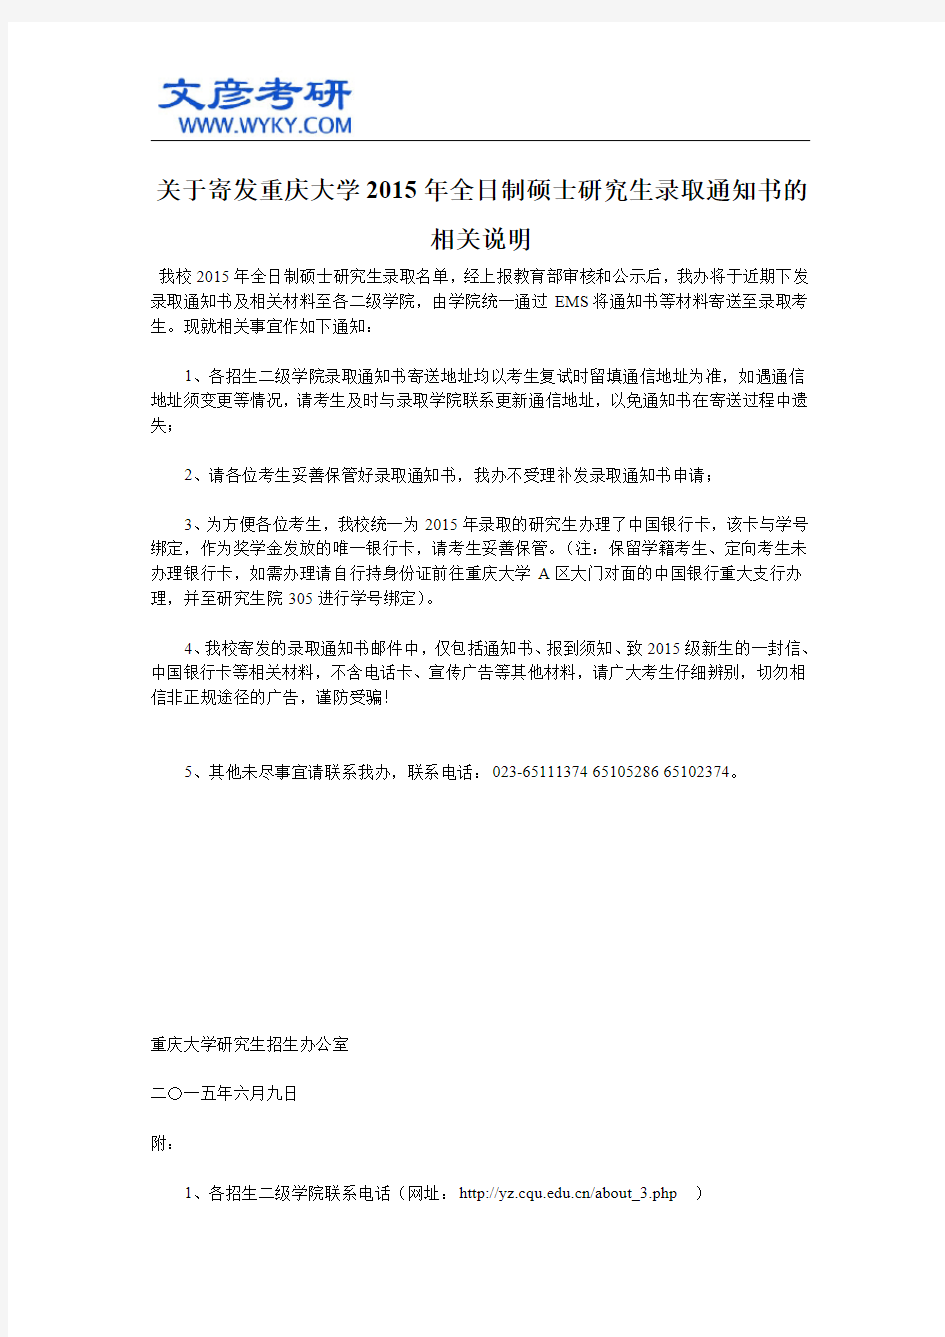 关于寄发重庆大学2015年全日制硕士研究生录取通知书的相关说明_重庆大学考研